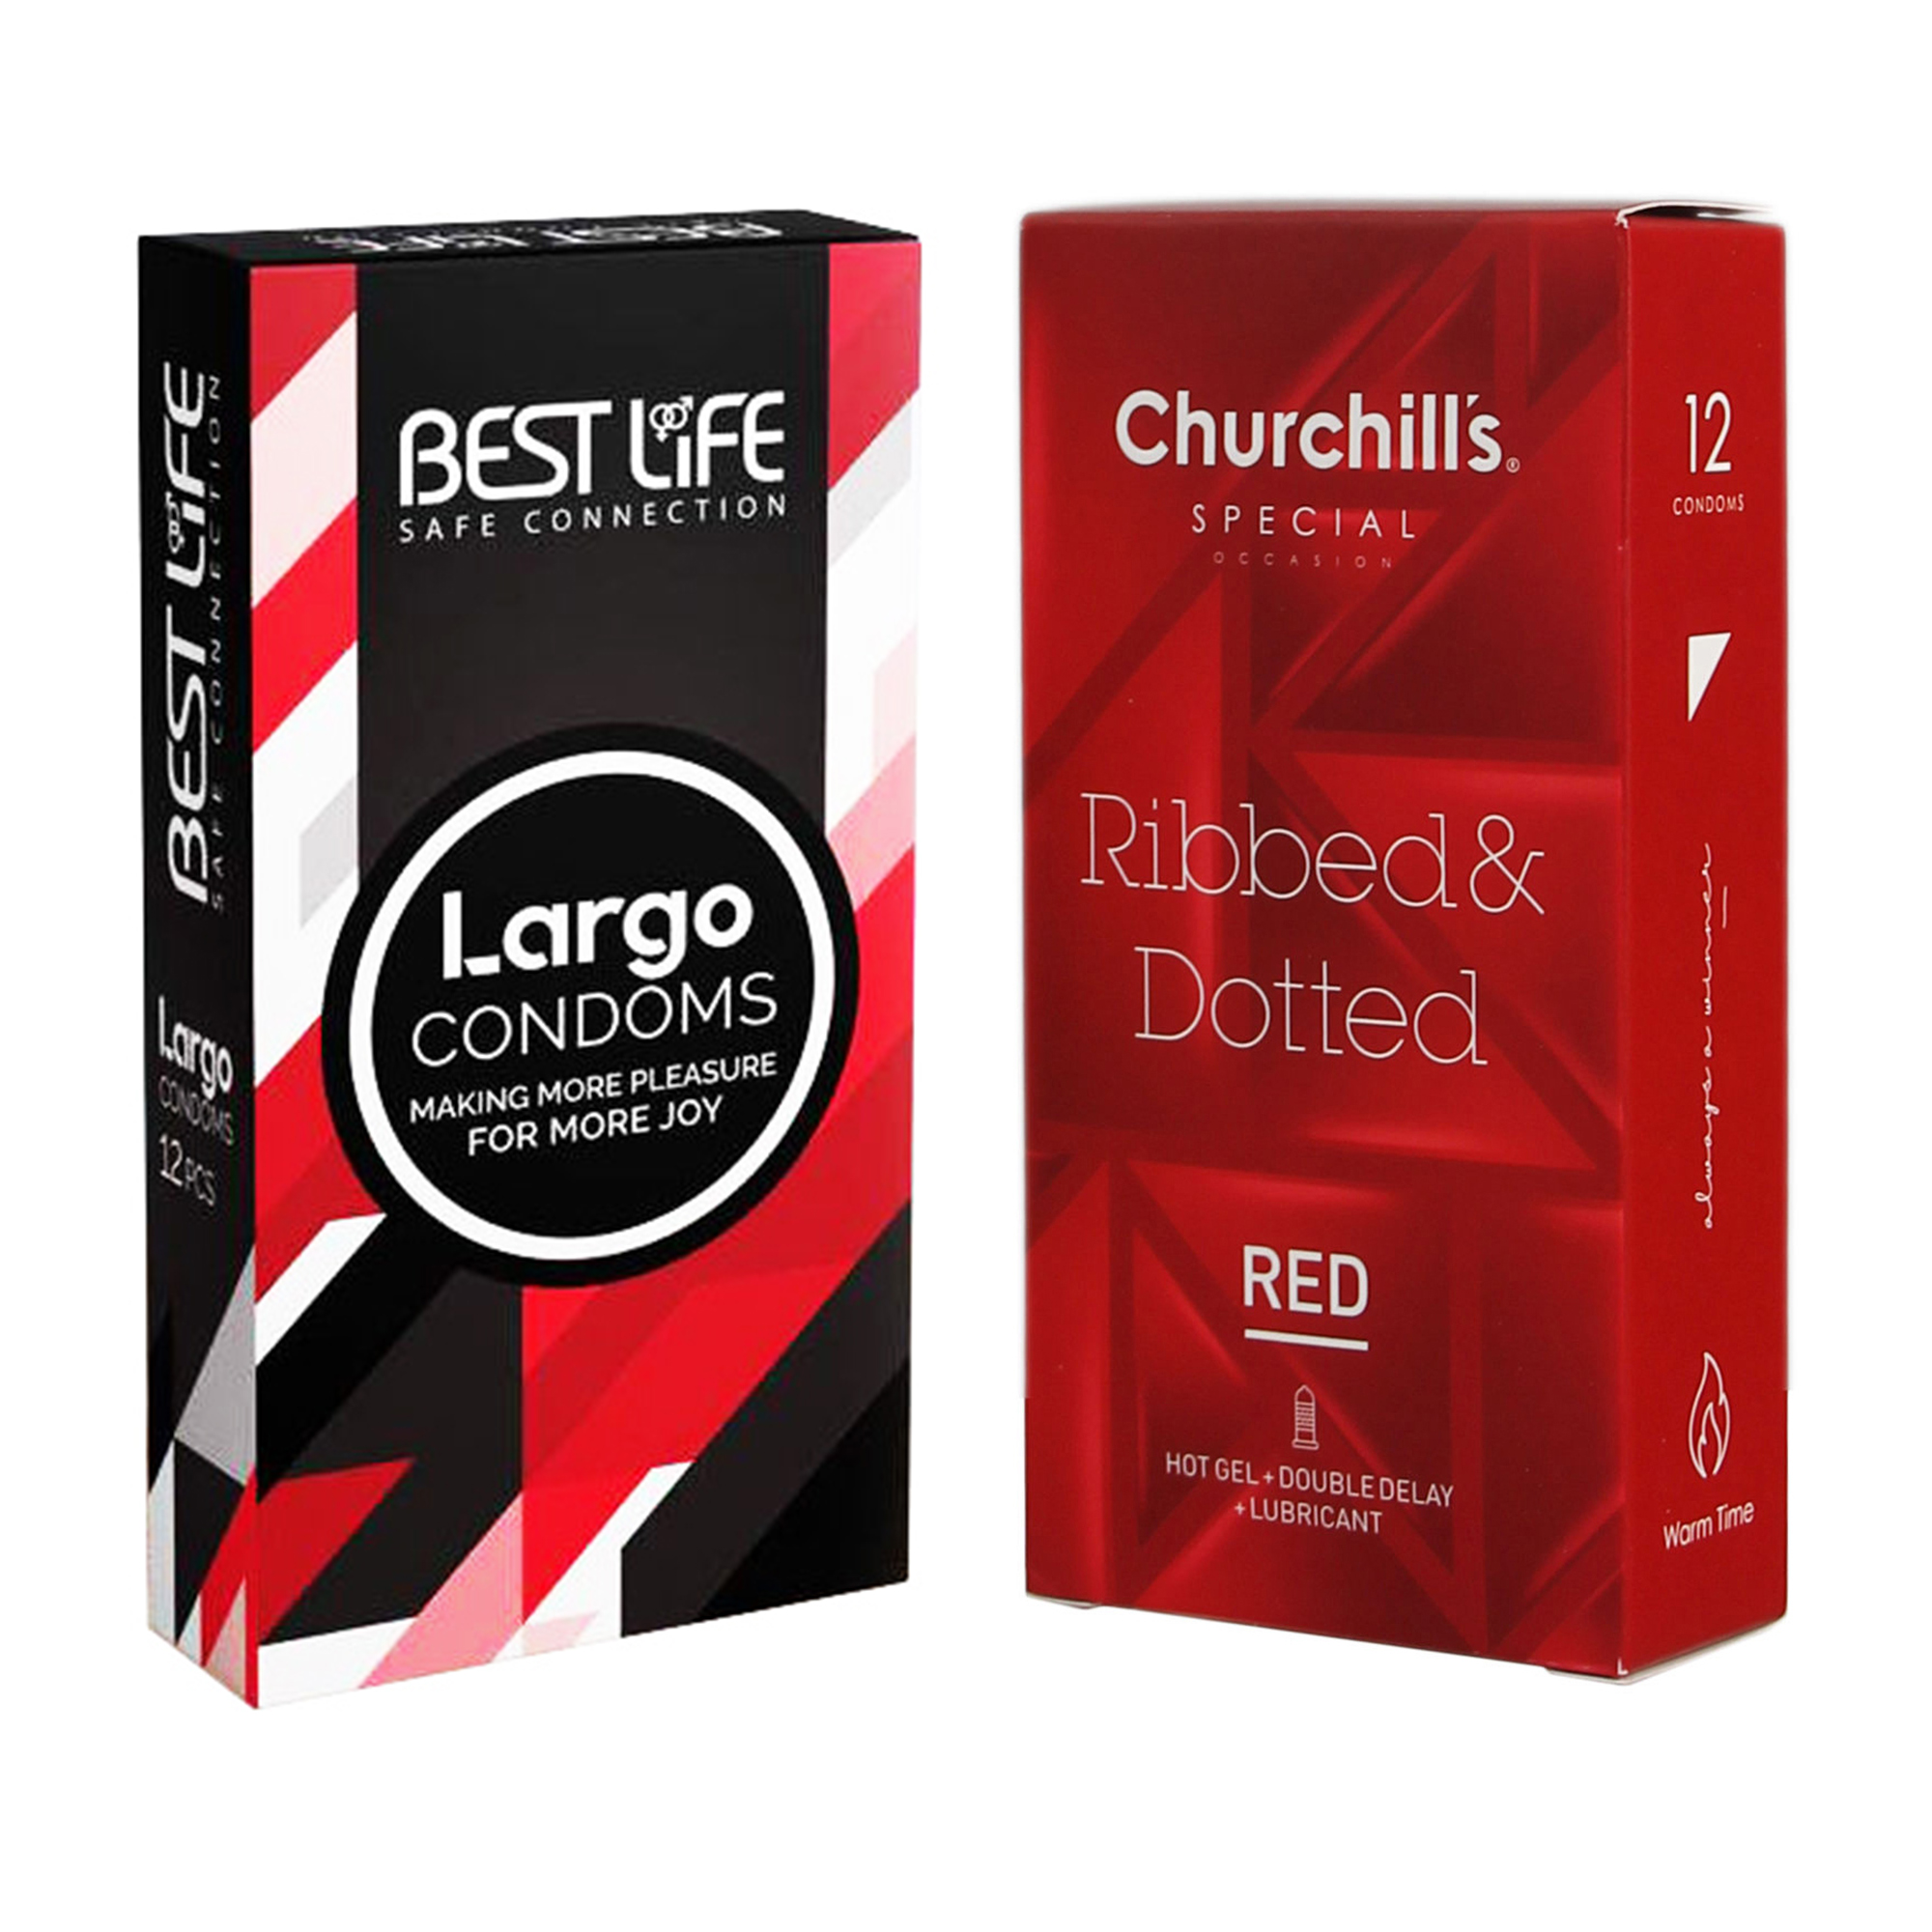 کاندوم چرچیلز مدل Ribbed & Dotted Red بسته 12 عددی به همراه کاندوم بست لایف مدل Largo بسته 12 عددی